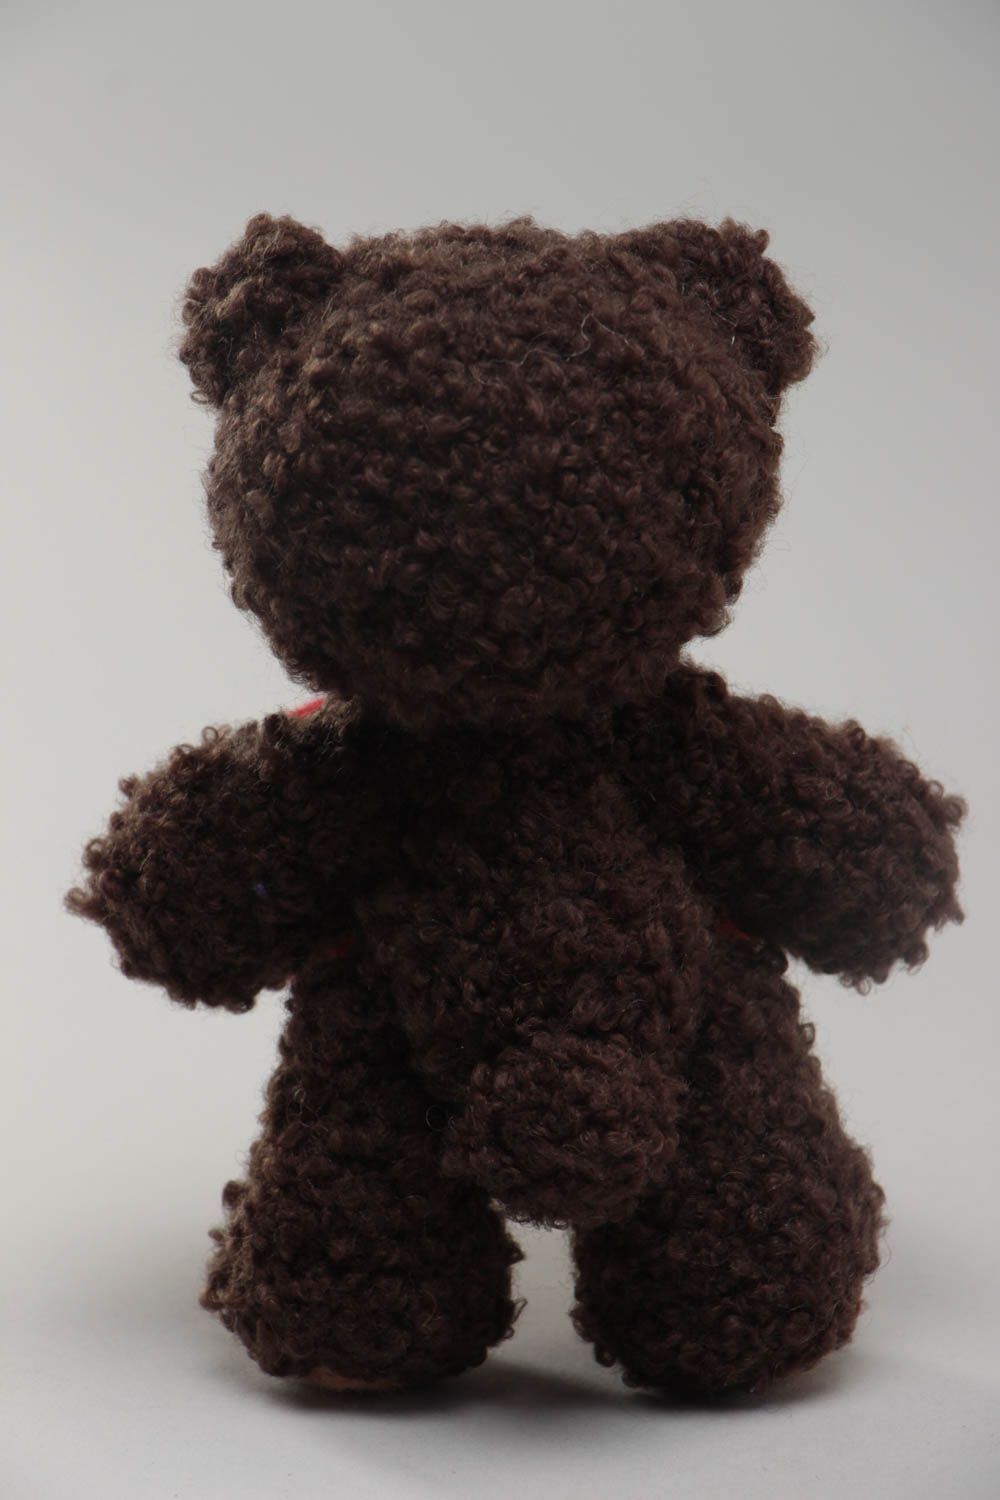 Вязаный медведь с сердцем из пряжи и шерсти игрушка ручной работы на подарок  фото 4